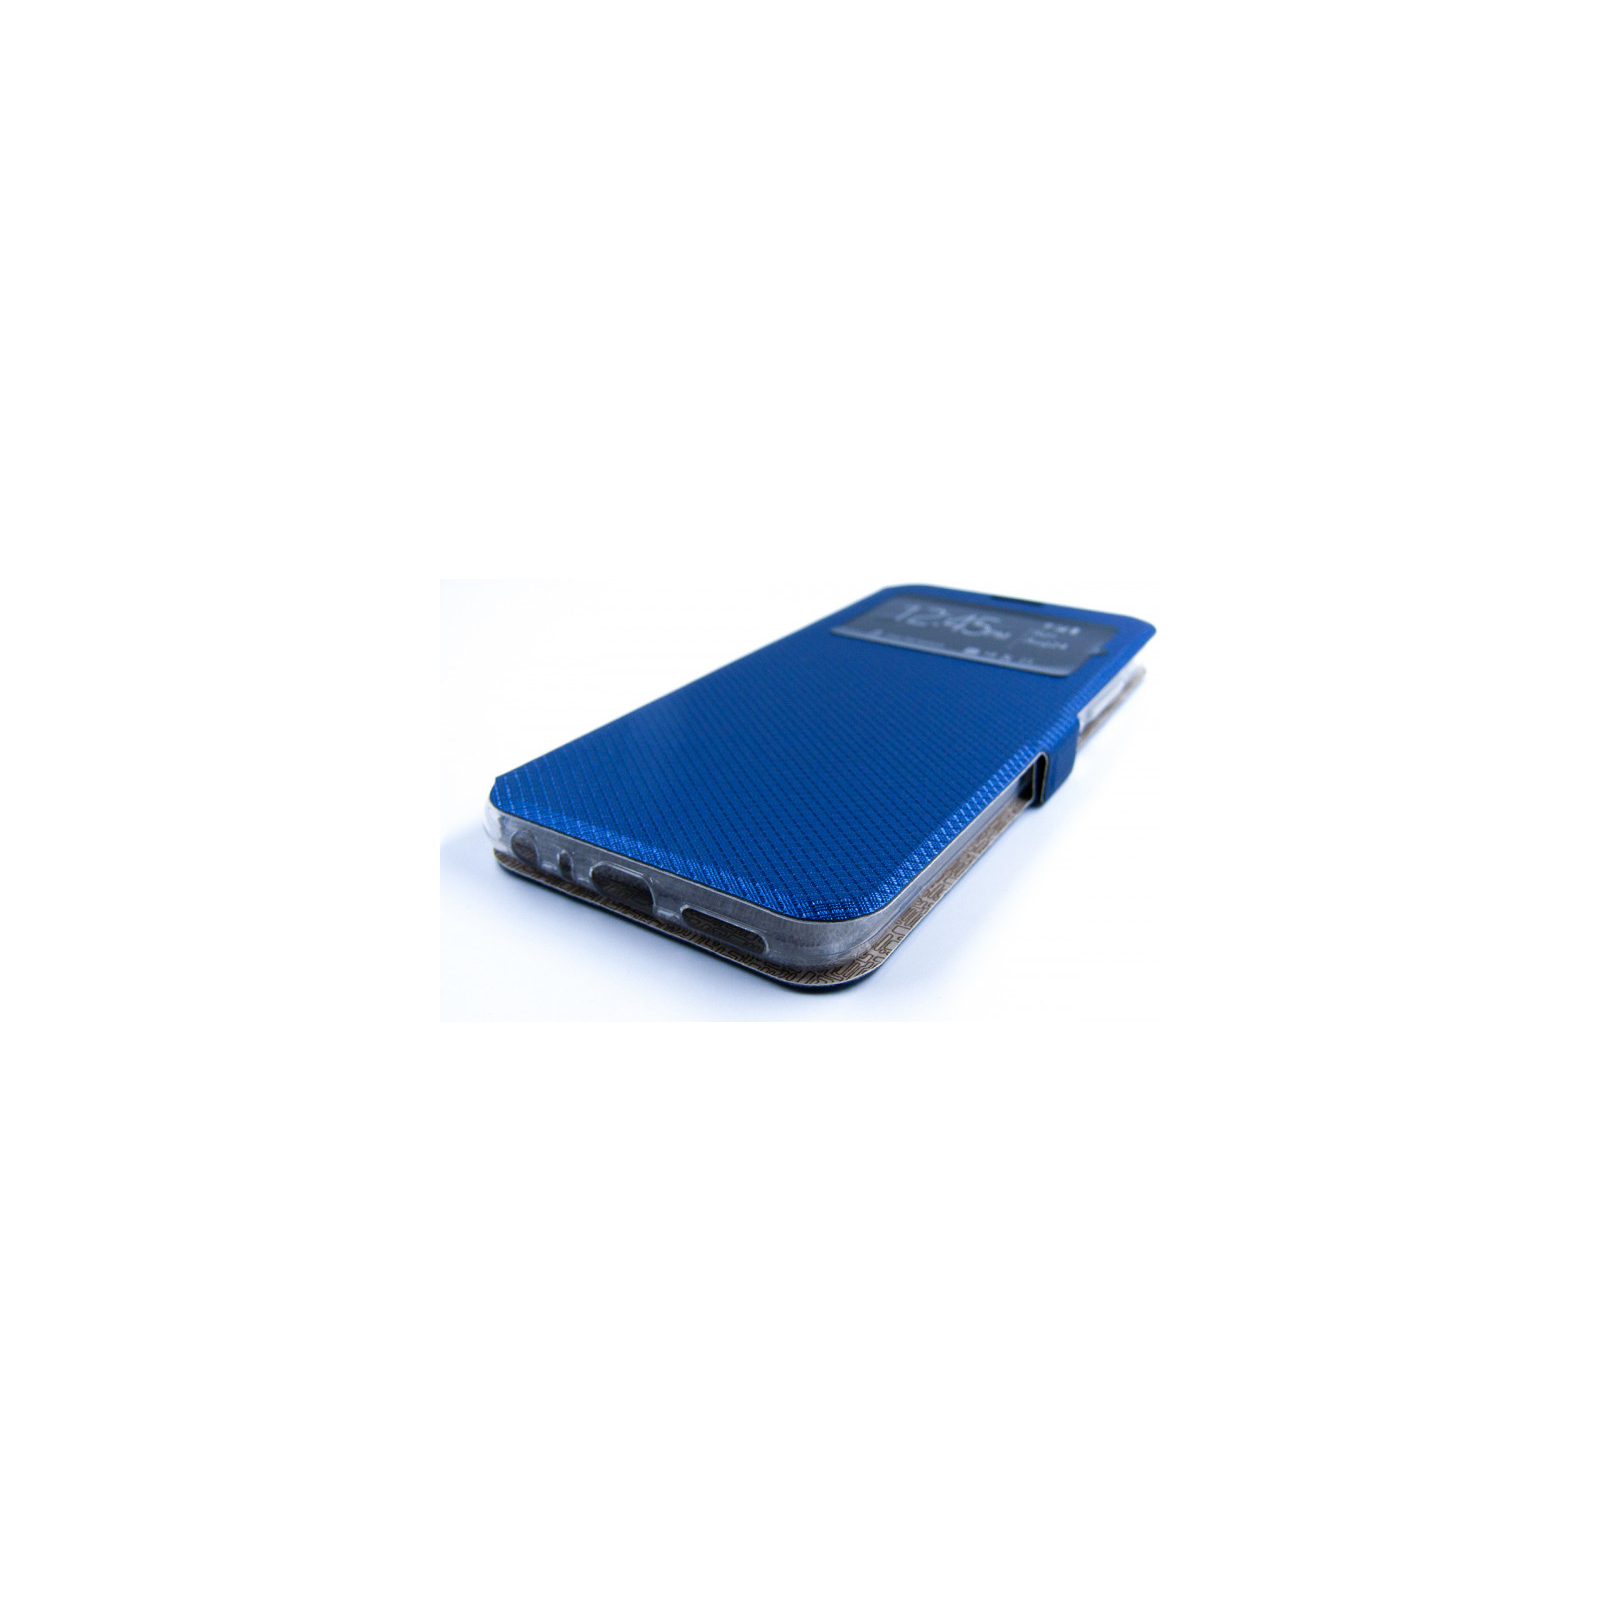 Чехол для мобильного телефона Dengos Flipp-Book Call ID Xiaomi Redmi Note 8, black (DG-SL-BK-250) (DG-SL-BK-250) изображение 3